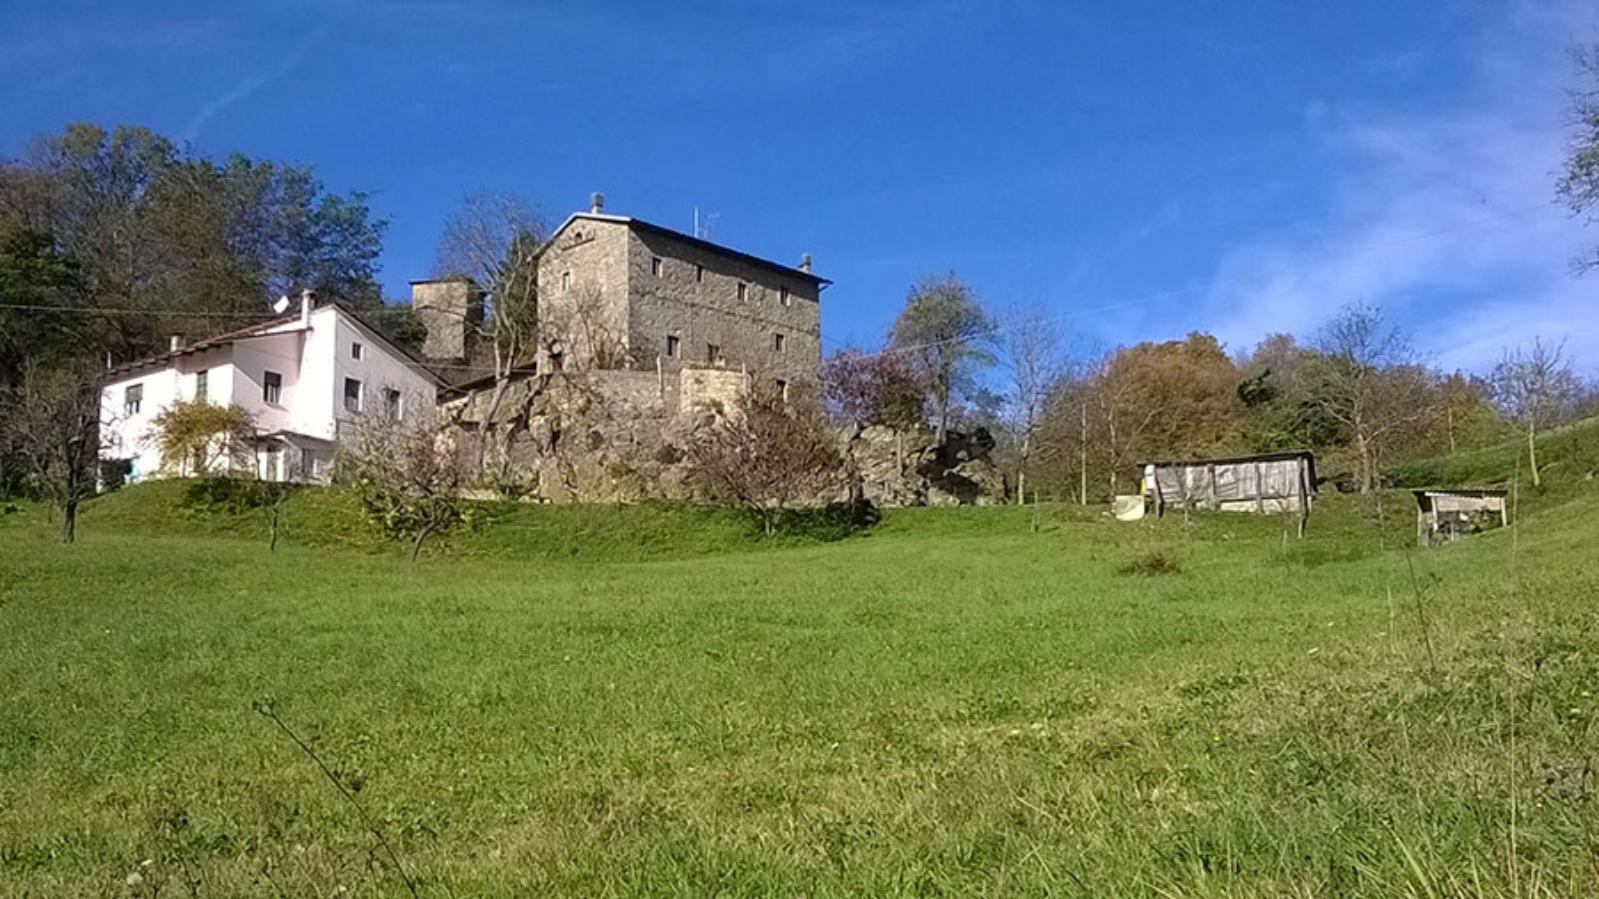 Rocca di Roffeno - case medievali con prato verde in primo piano